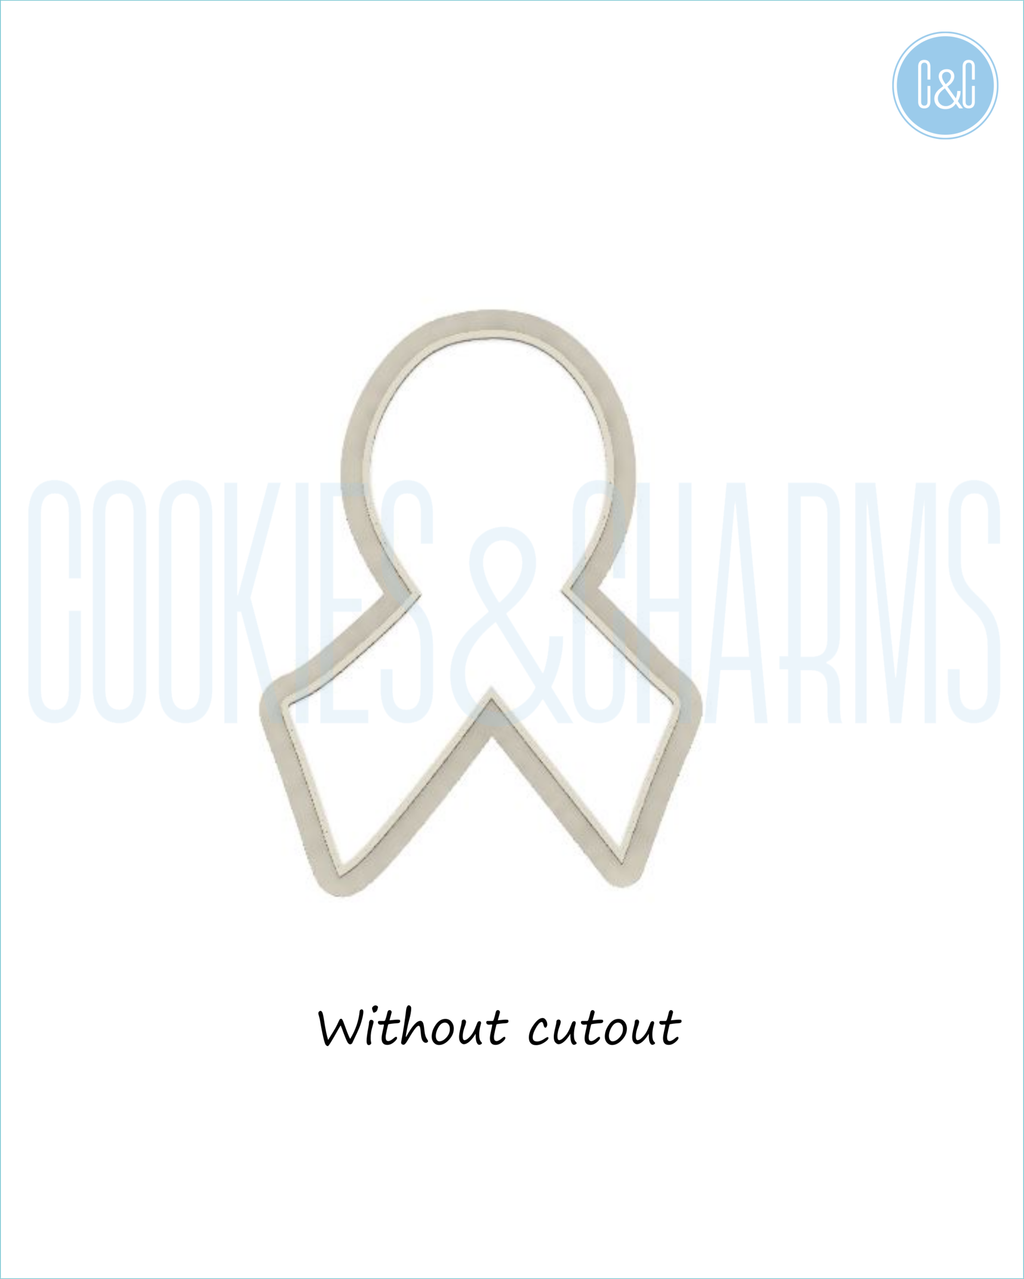 cancer ribbon watermark 3.png